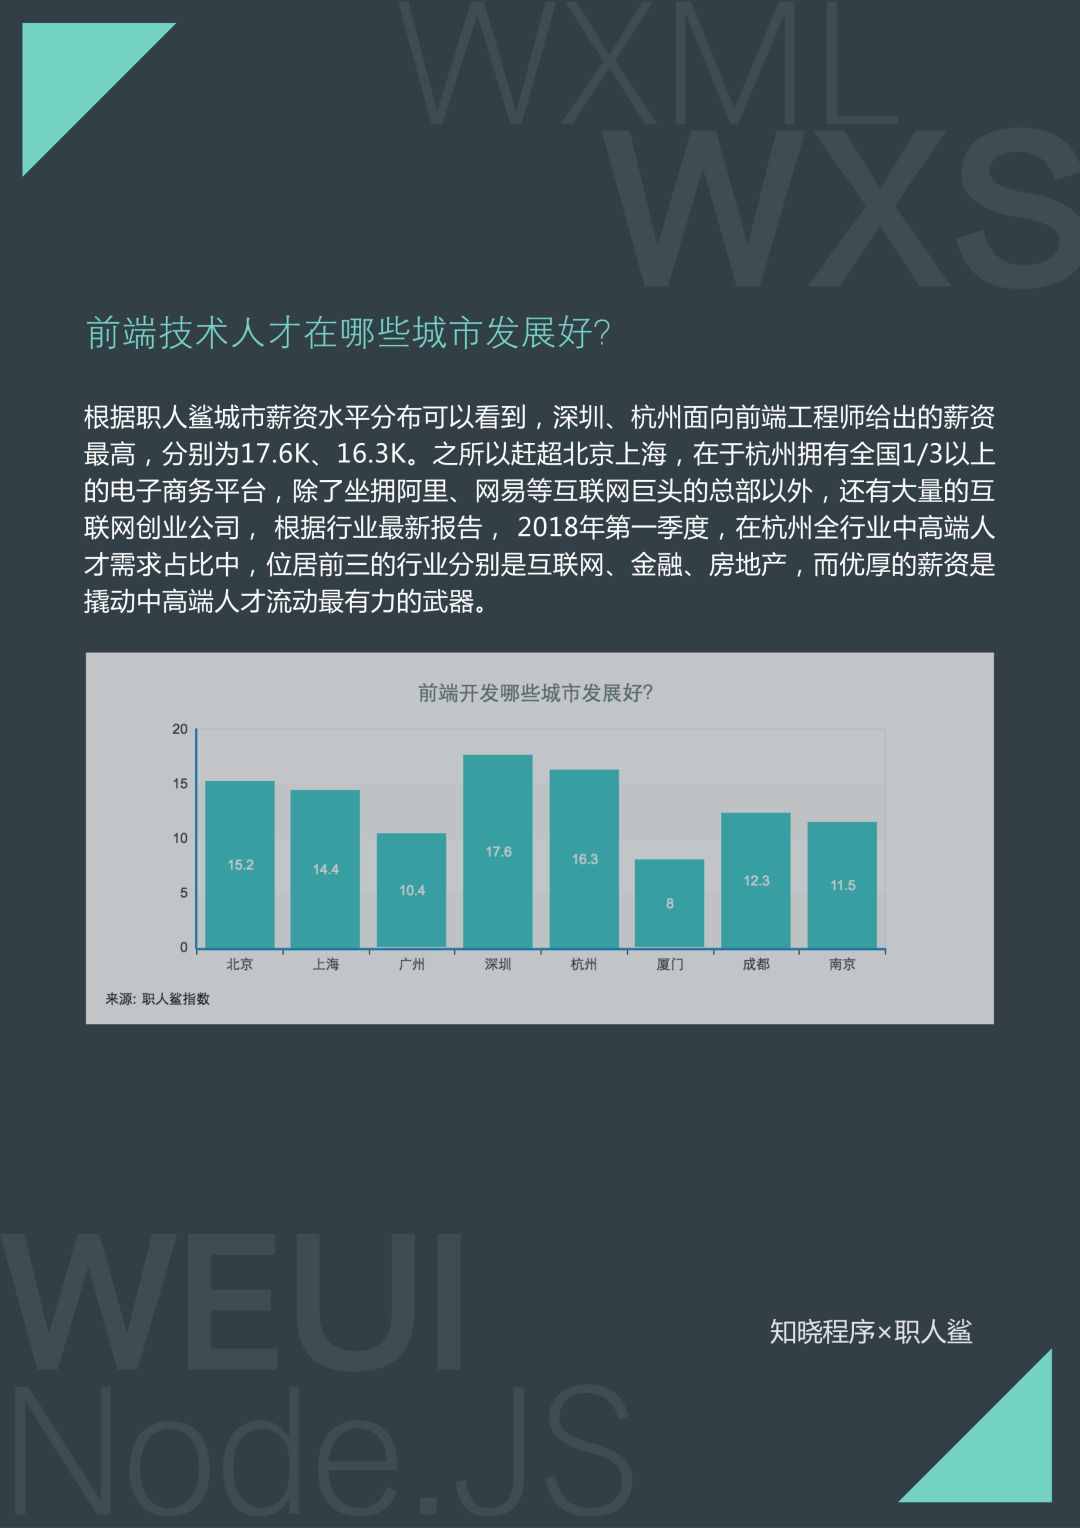 平均月薪 17.2 K，深圳、杭州待遇最高，首份小程序技术人才就业指南出炉